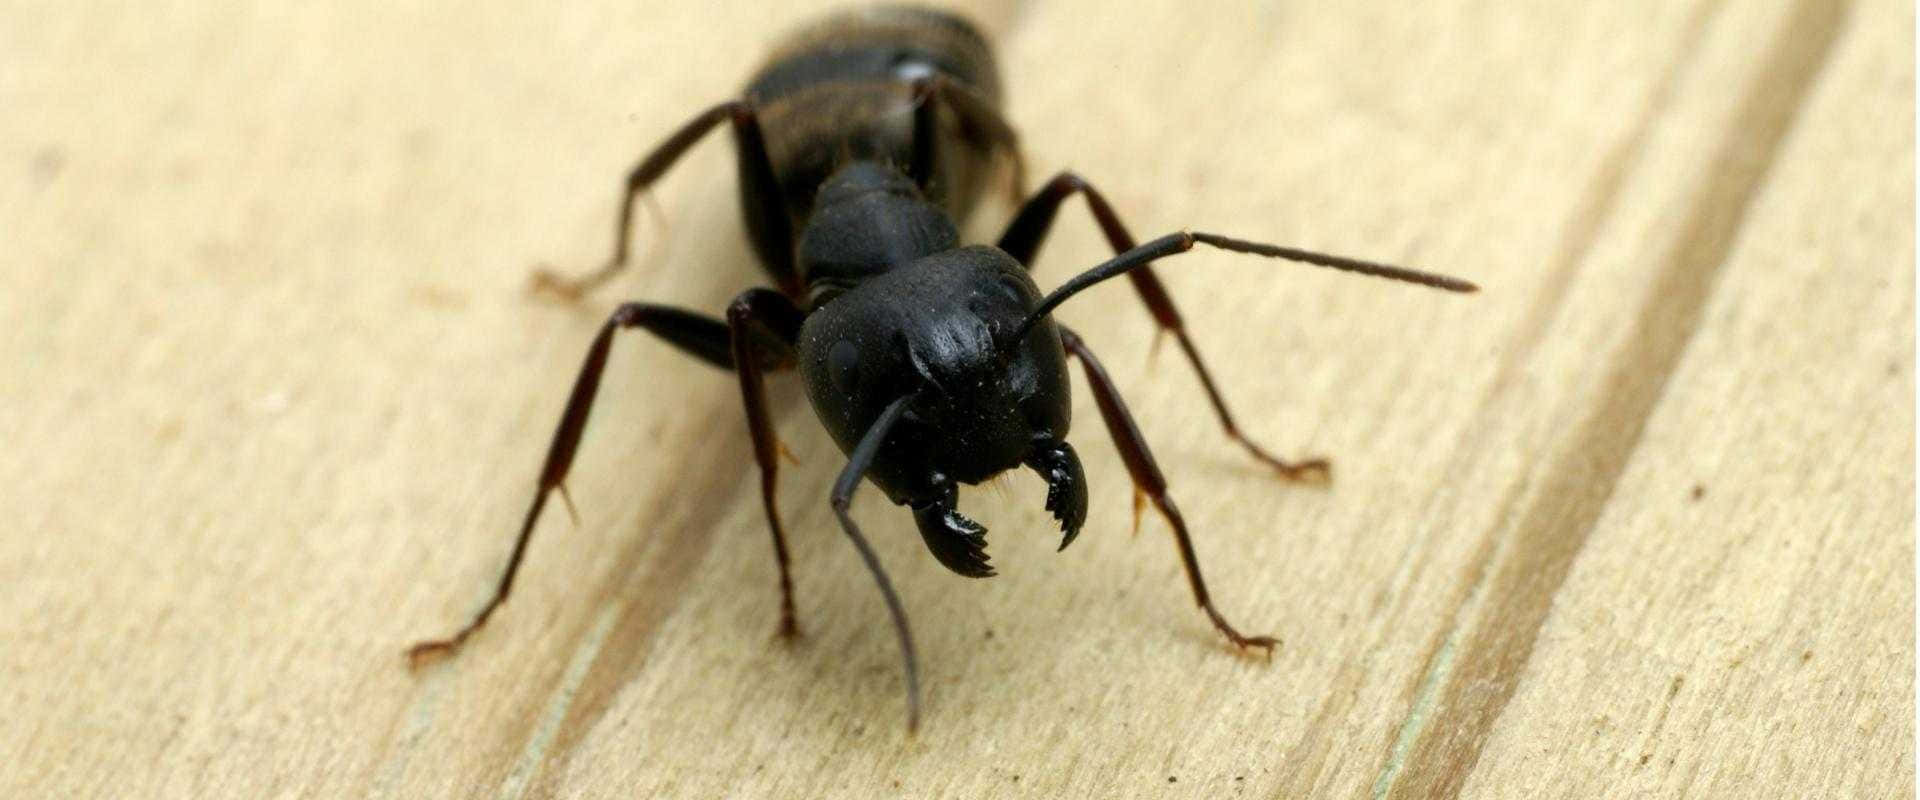 Carpenter Ant Closeupon Wood Wallpaper